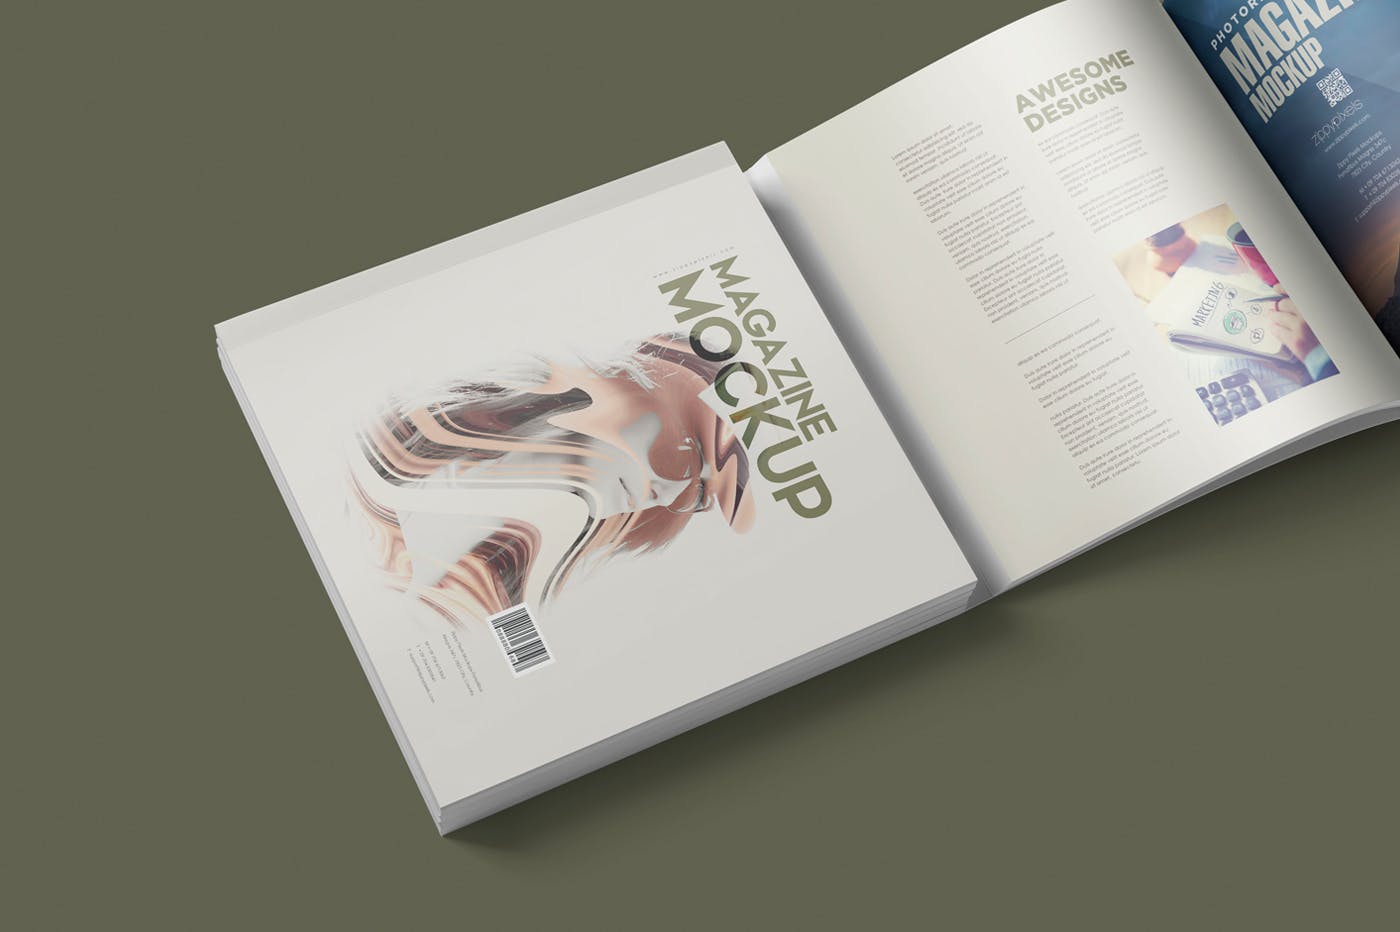 方形杂志印刷效果图样机第一素材精选PSD模板 Square Magazine Mockup Set插图(3)